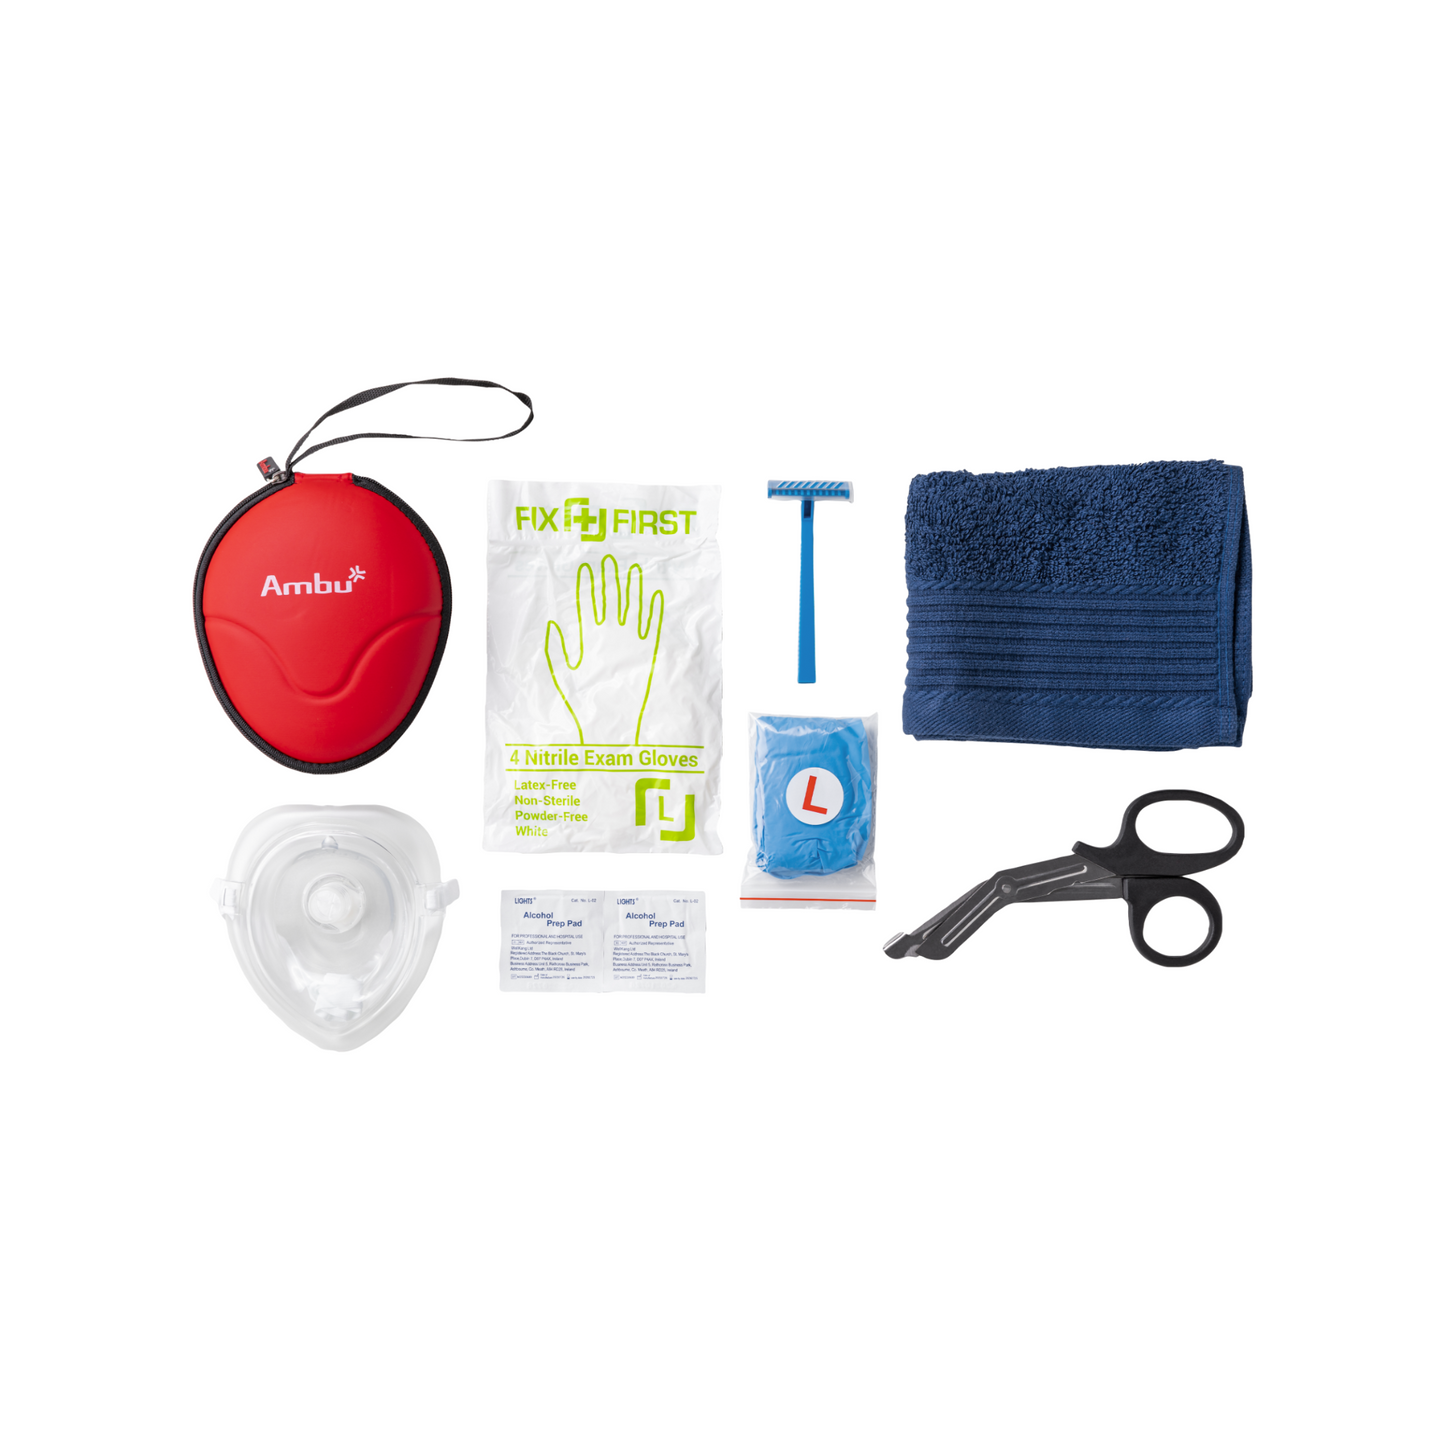 Philips Heartstart – FRx AED-Komplettpaket mit weißer Innenbox